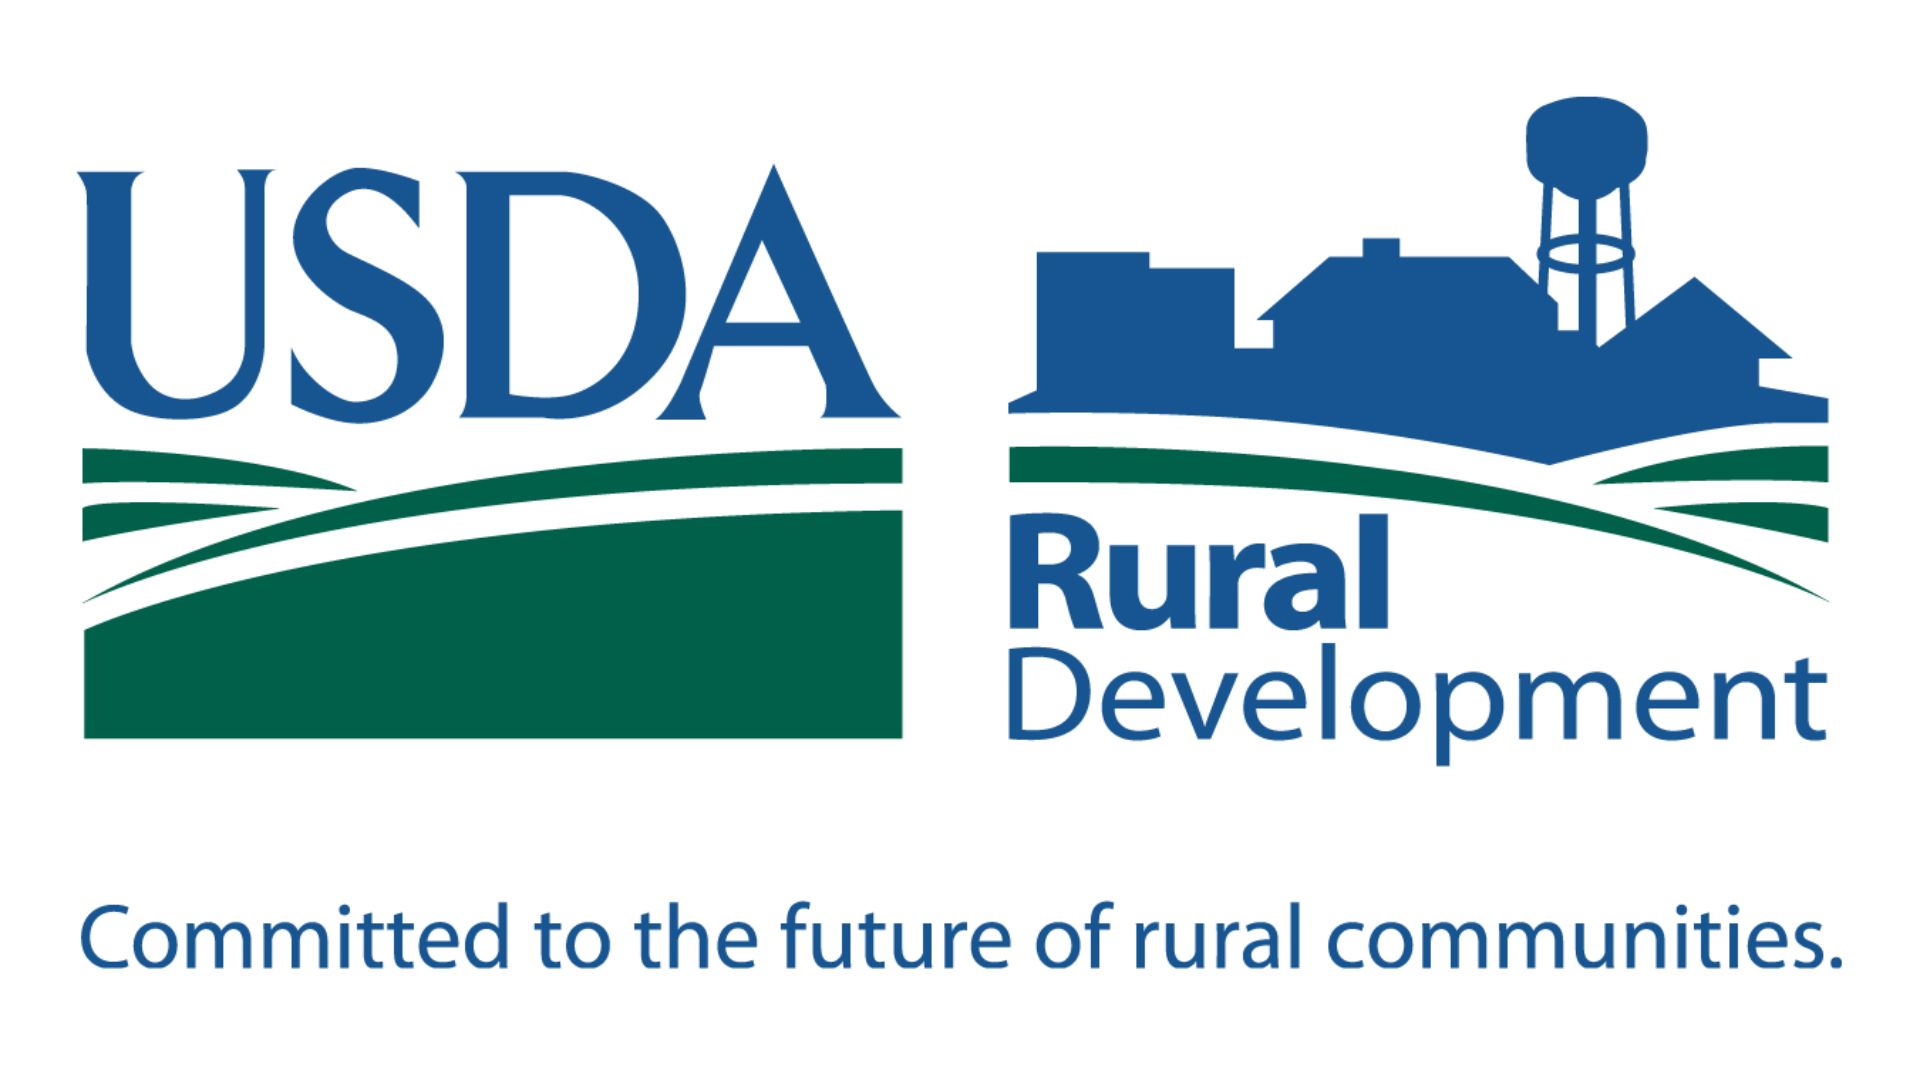 USDA Direct Rural Homebuyers' Paradise.